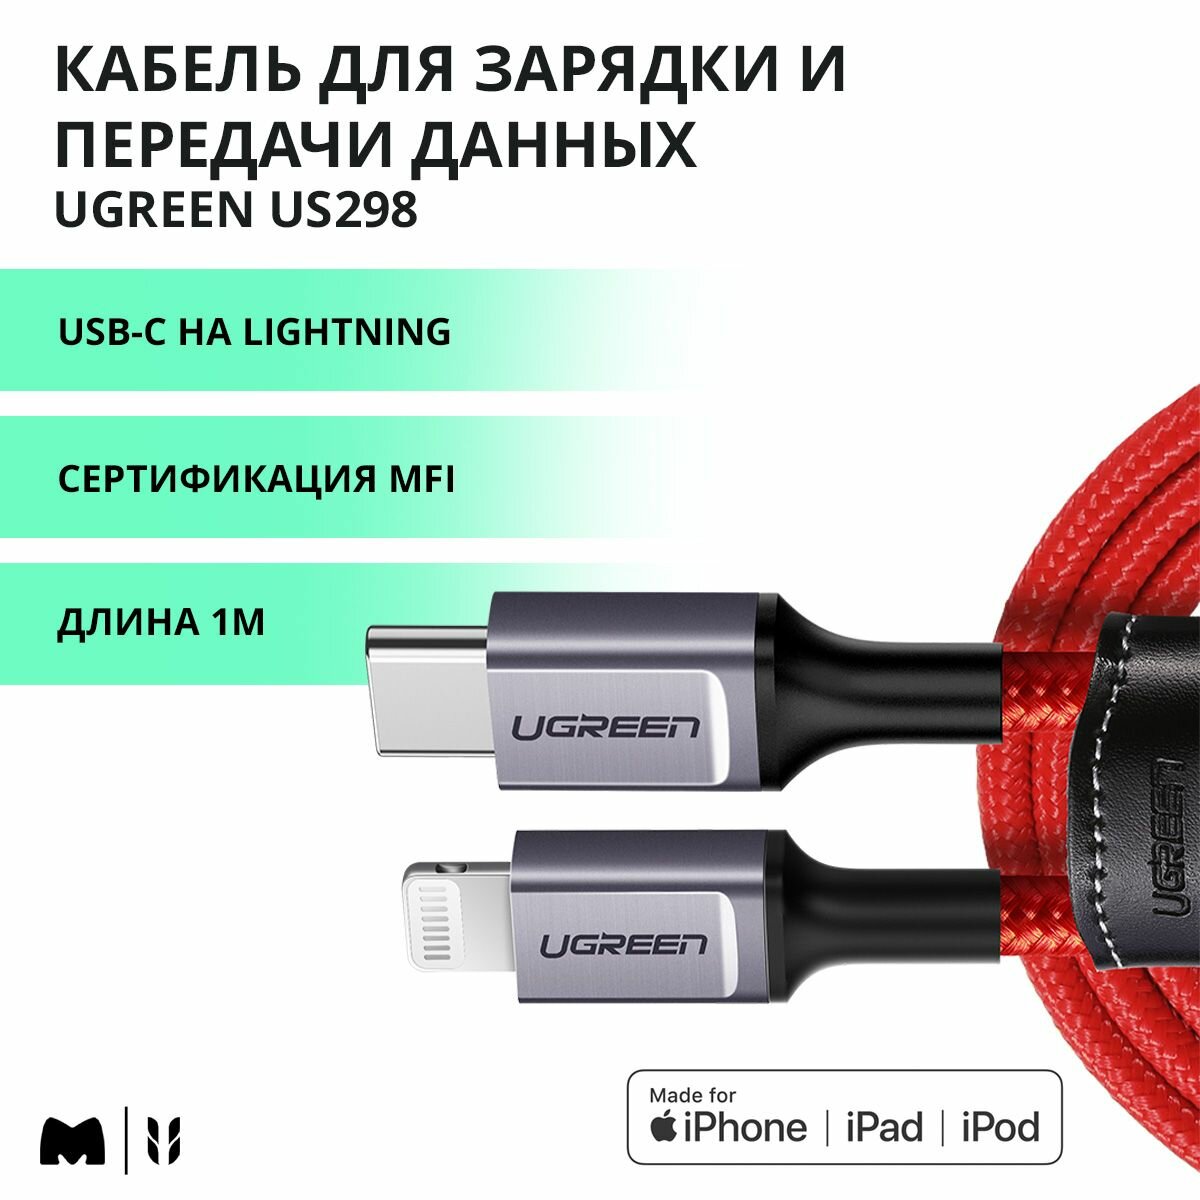 Кабель для быстрой зарядки и передачи данных UGREEN US298 / USB-C на Lightning / MFi сертификат / Длина 1 м / цвет красный (20309)